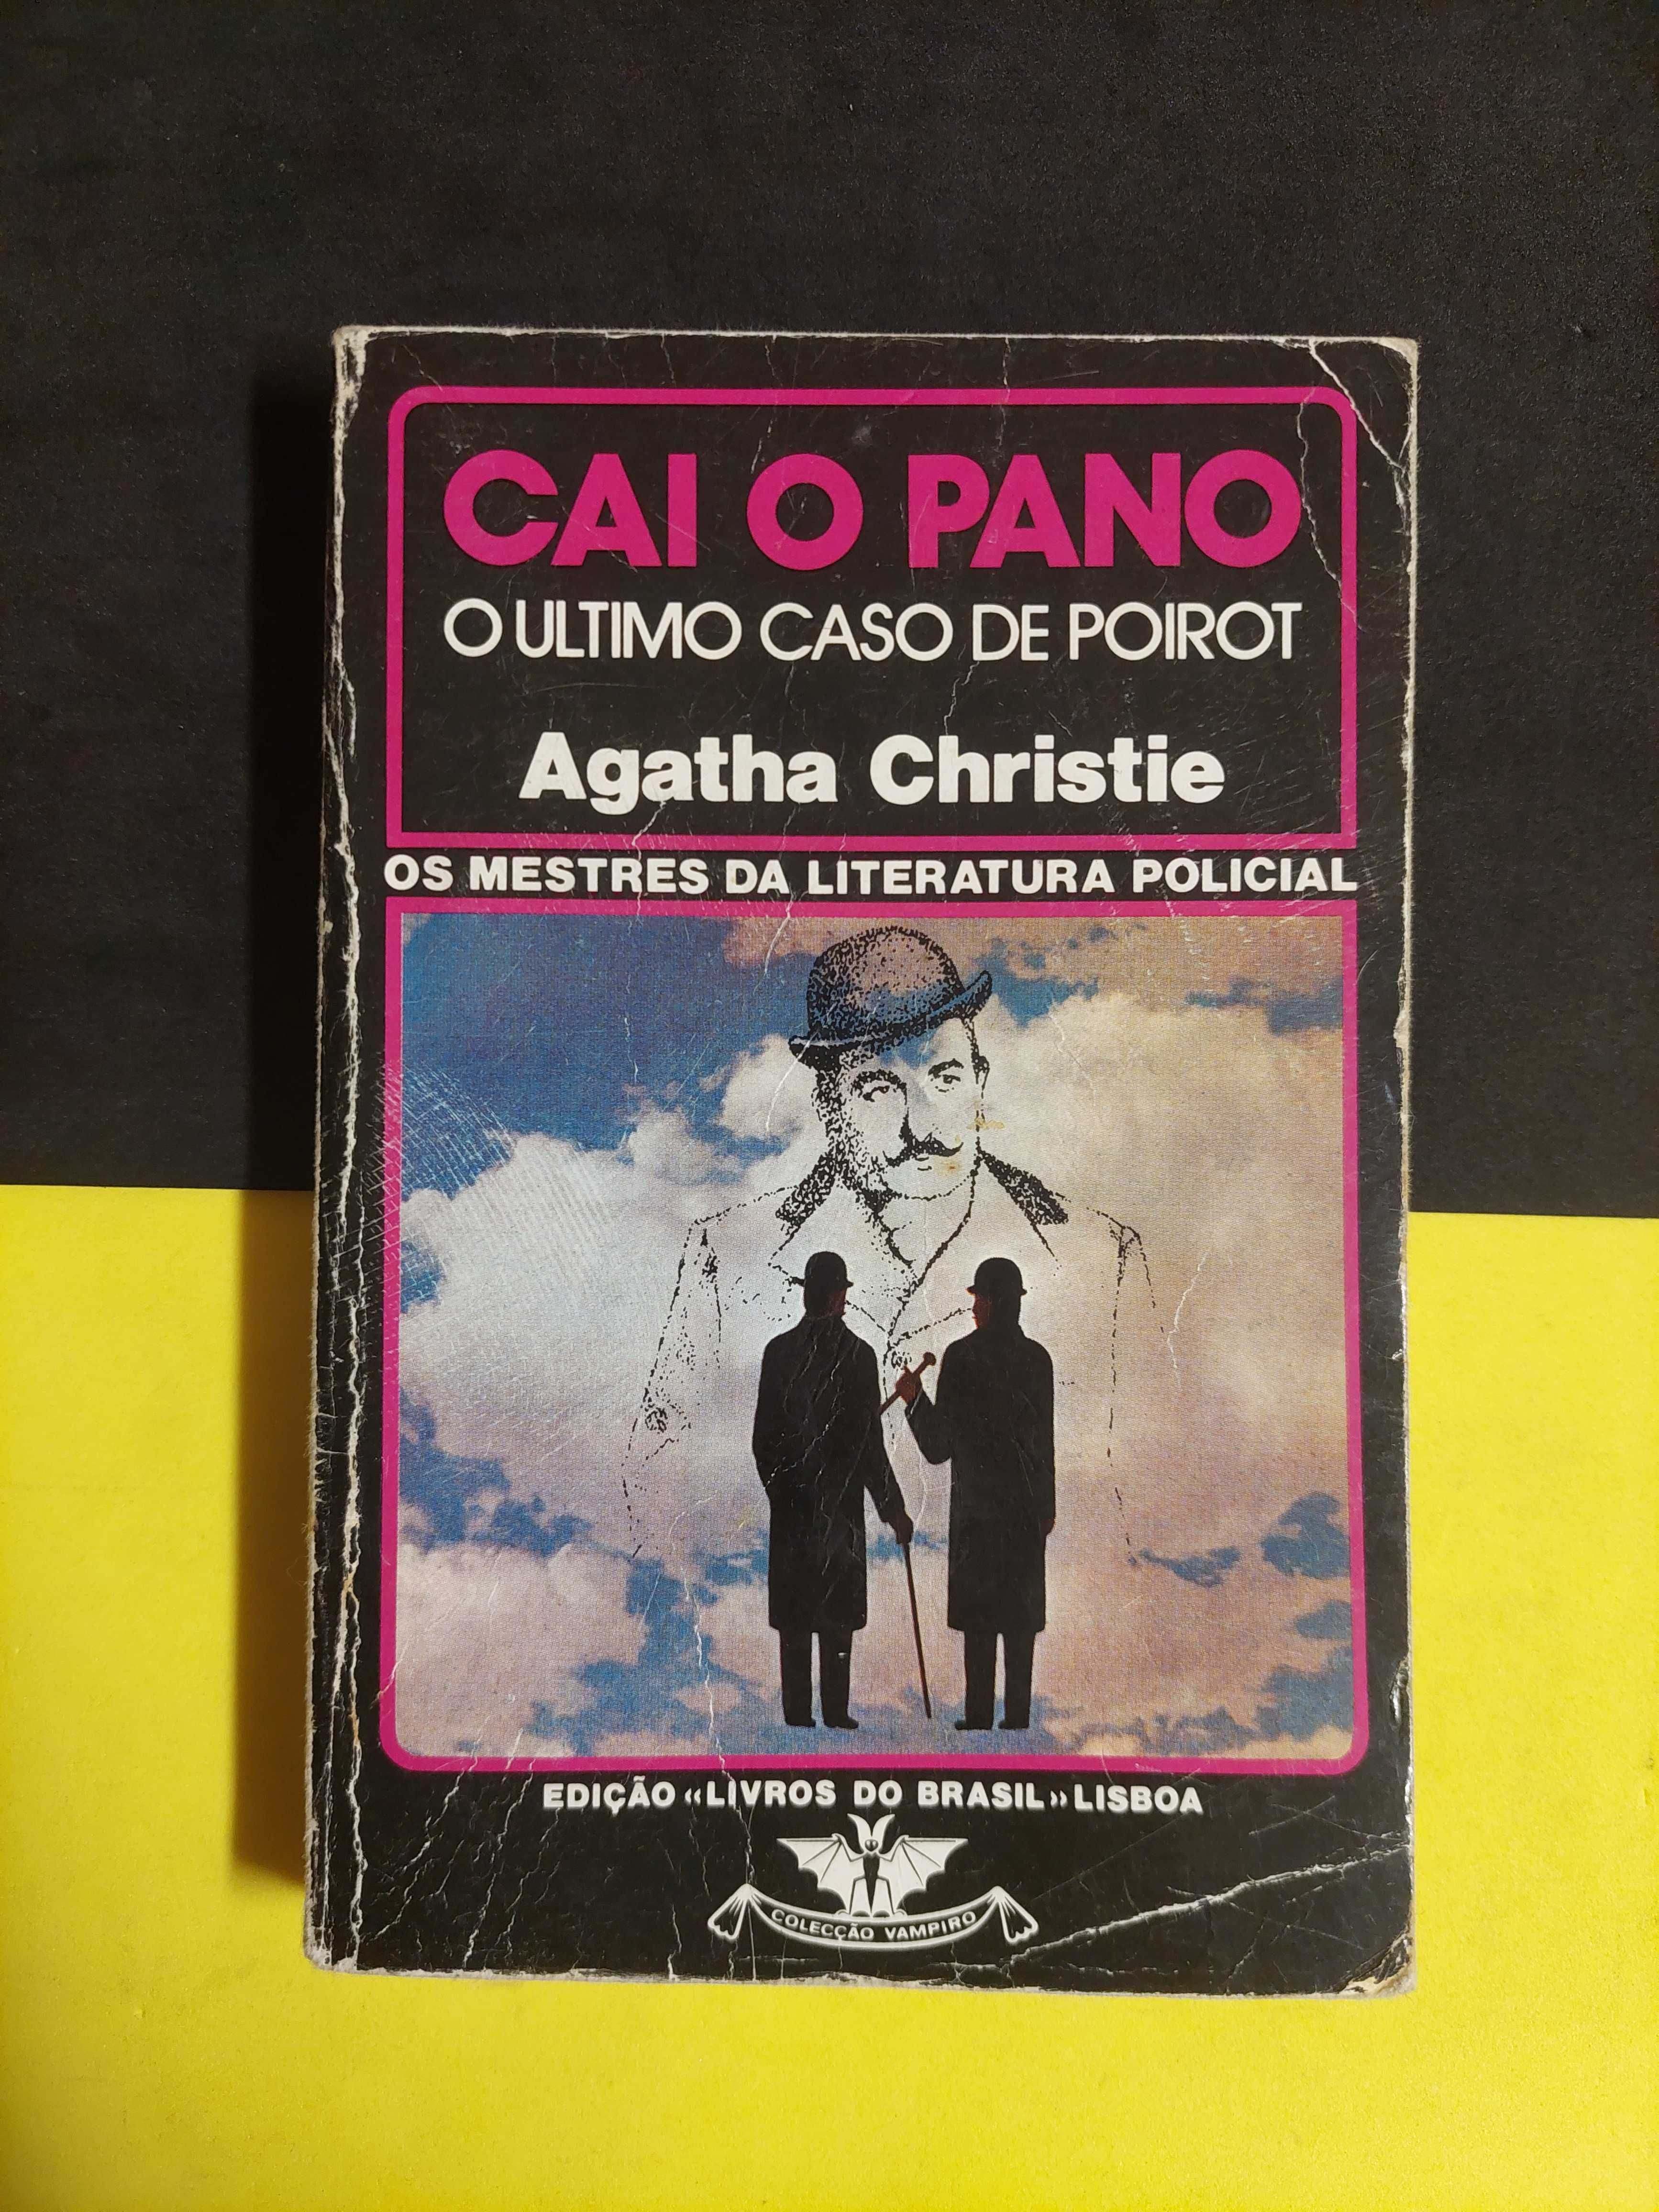 Agatha Christie - Cai o Pano, o ultimo caso de Poirot